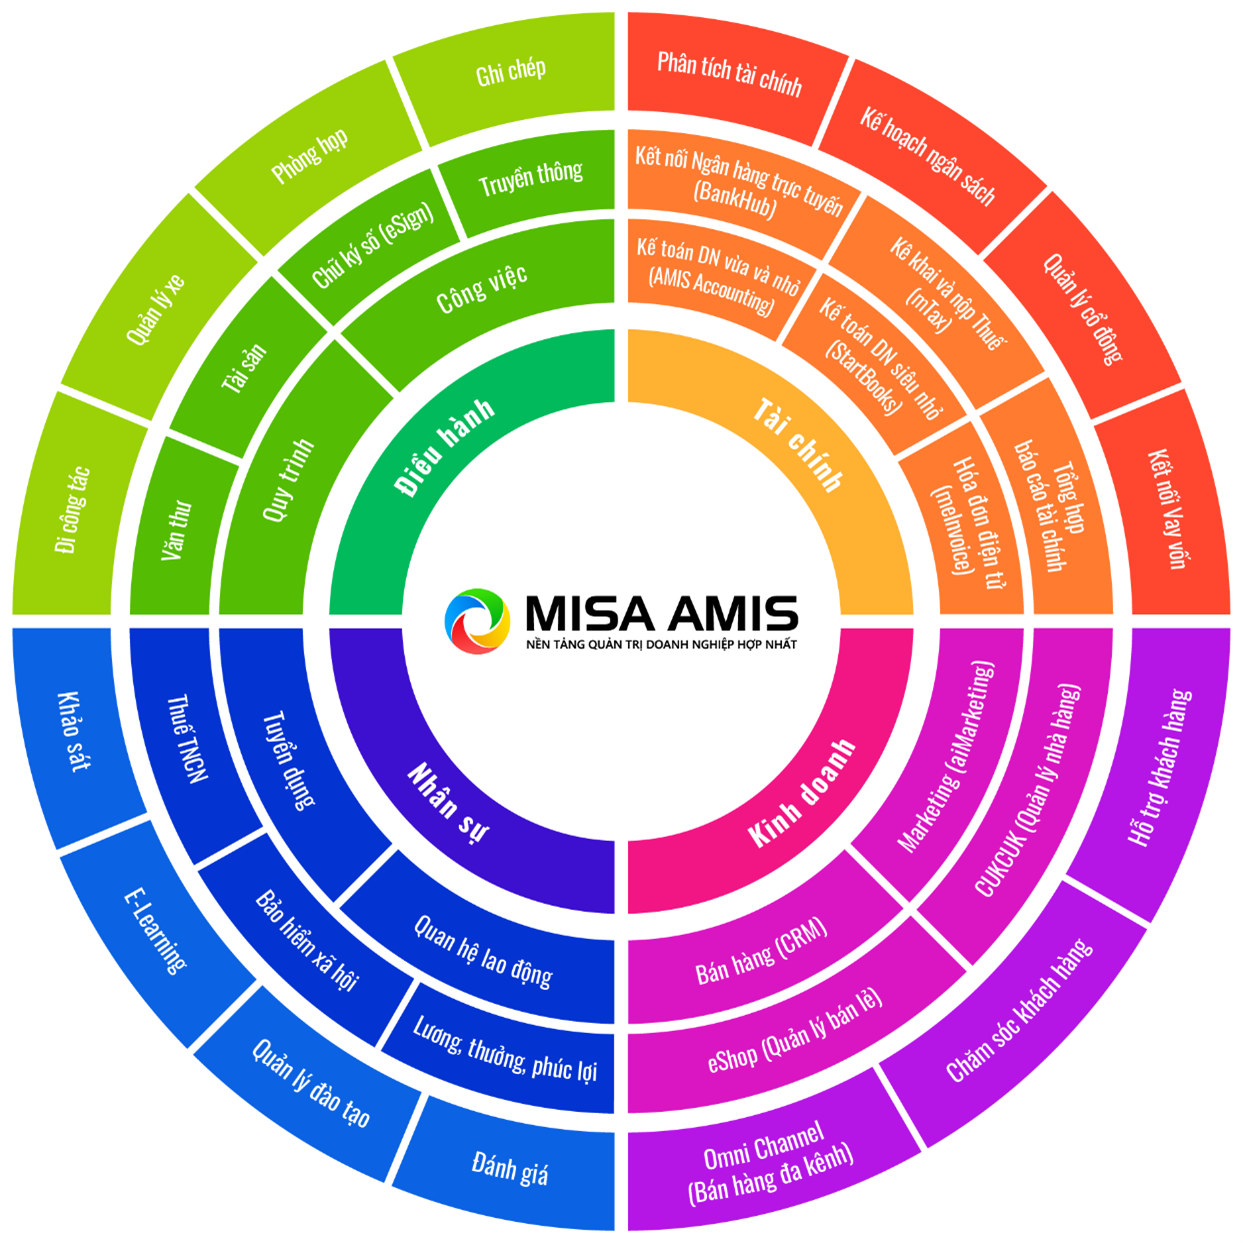 MISA AMIS thuộc top 4 giải pháp đổi mới sáng tạo xuất sắc nhất Việt Nam - Ảnh 1.